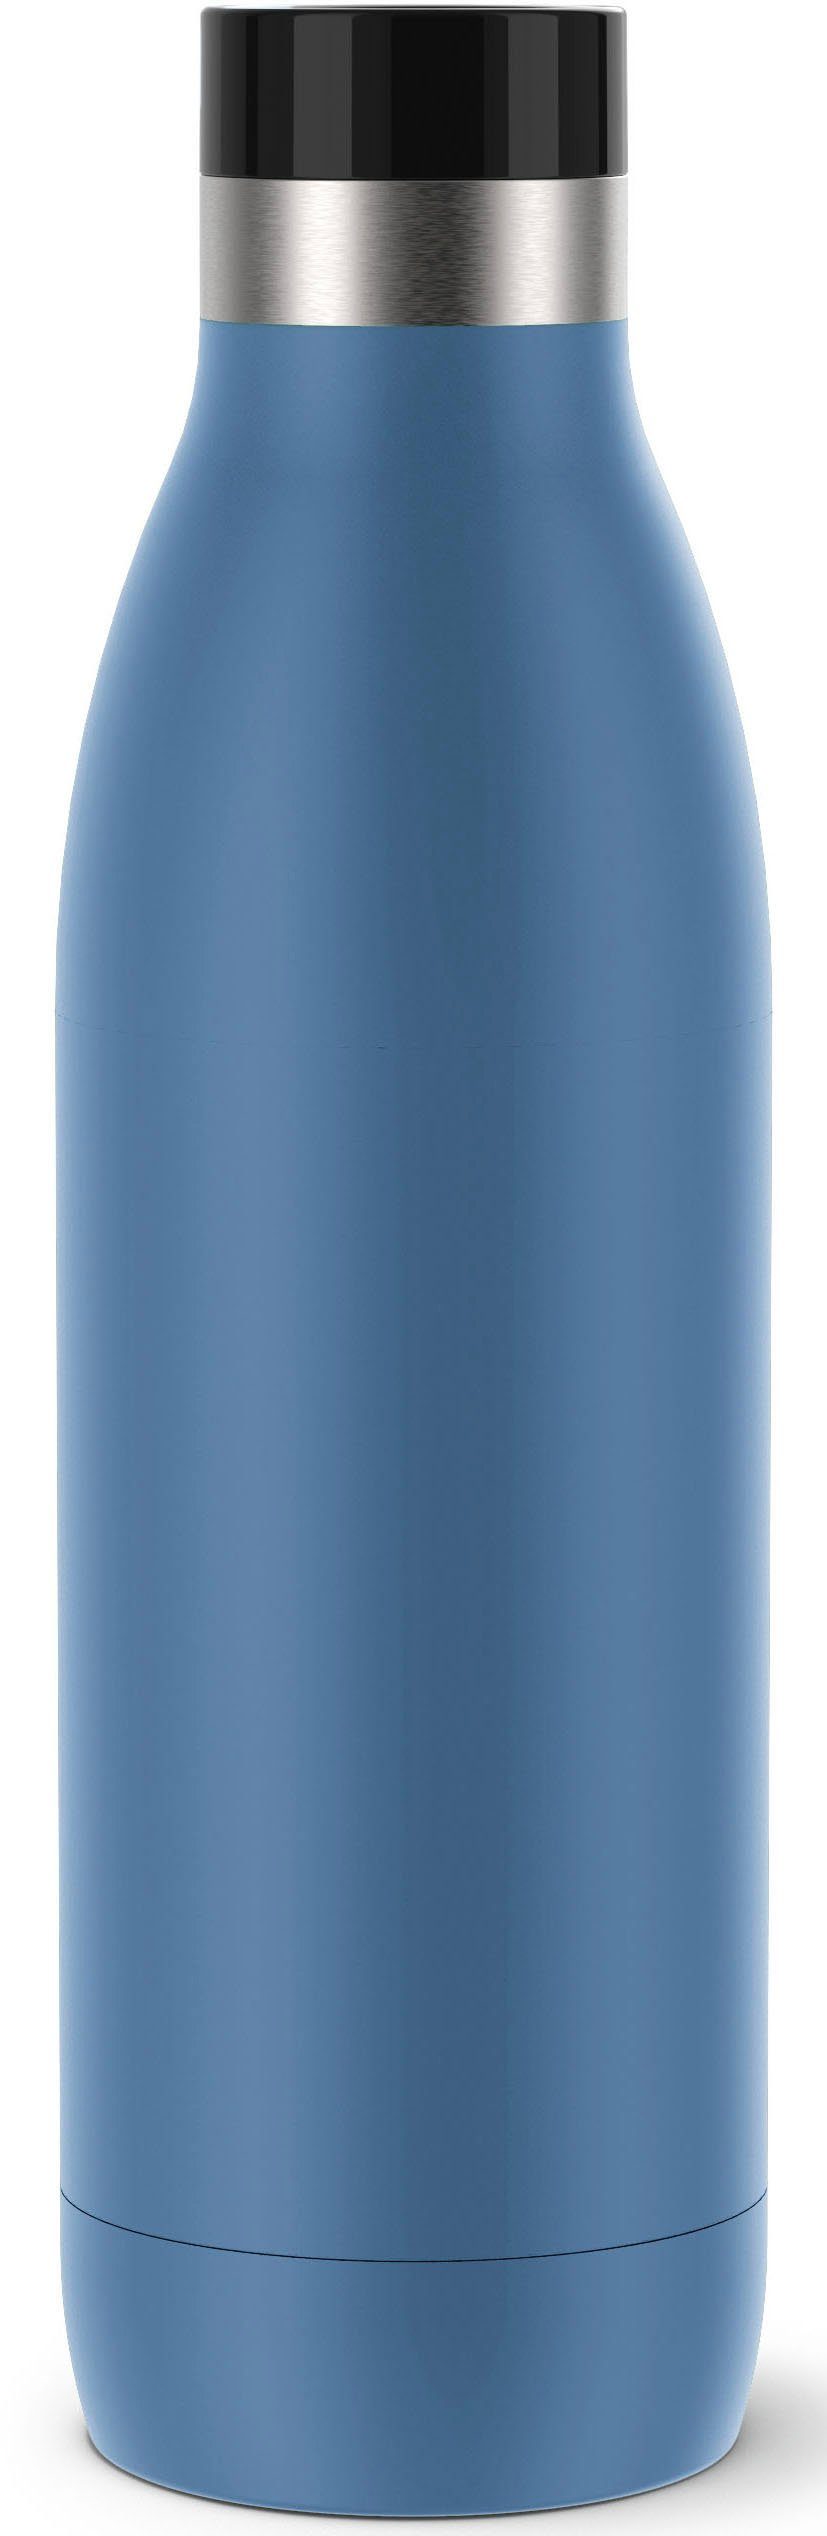 Förderprogramm Emsa Isolierflasche Bludrop, Quick-Press Verschluss, 0,7 12 h kühl, Trinkgenuss, h 24 360° warm, Blau L